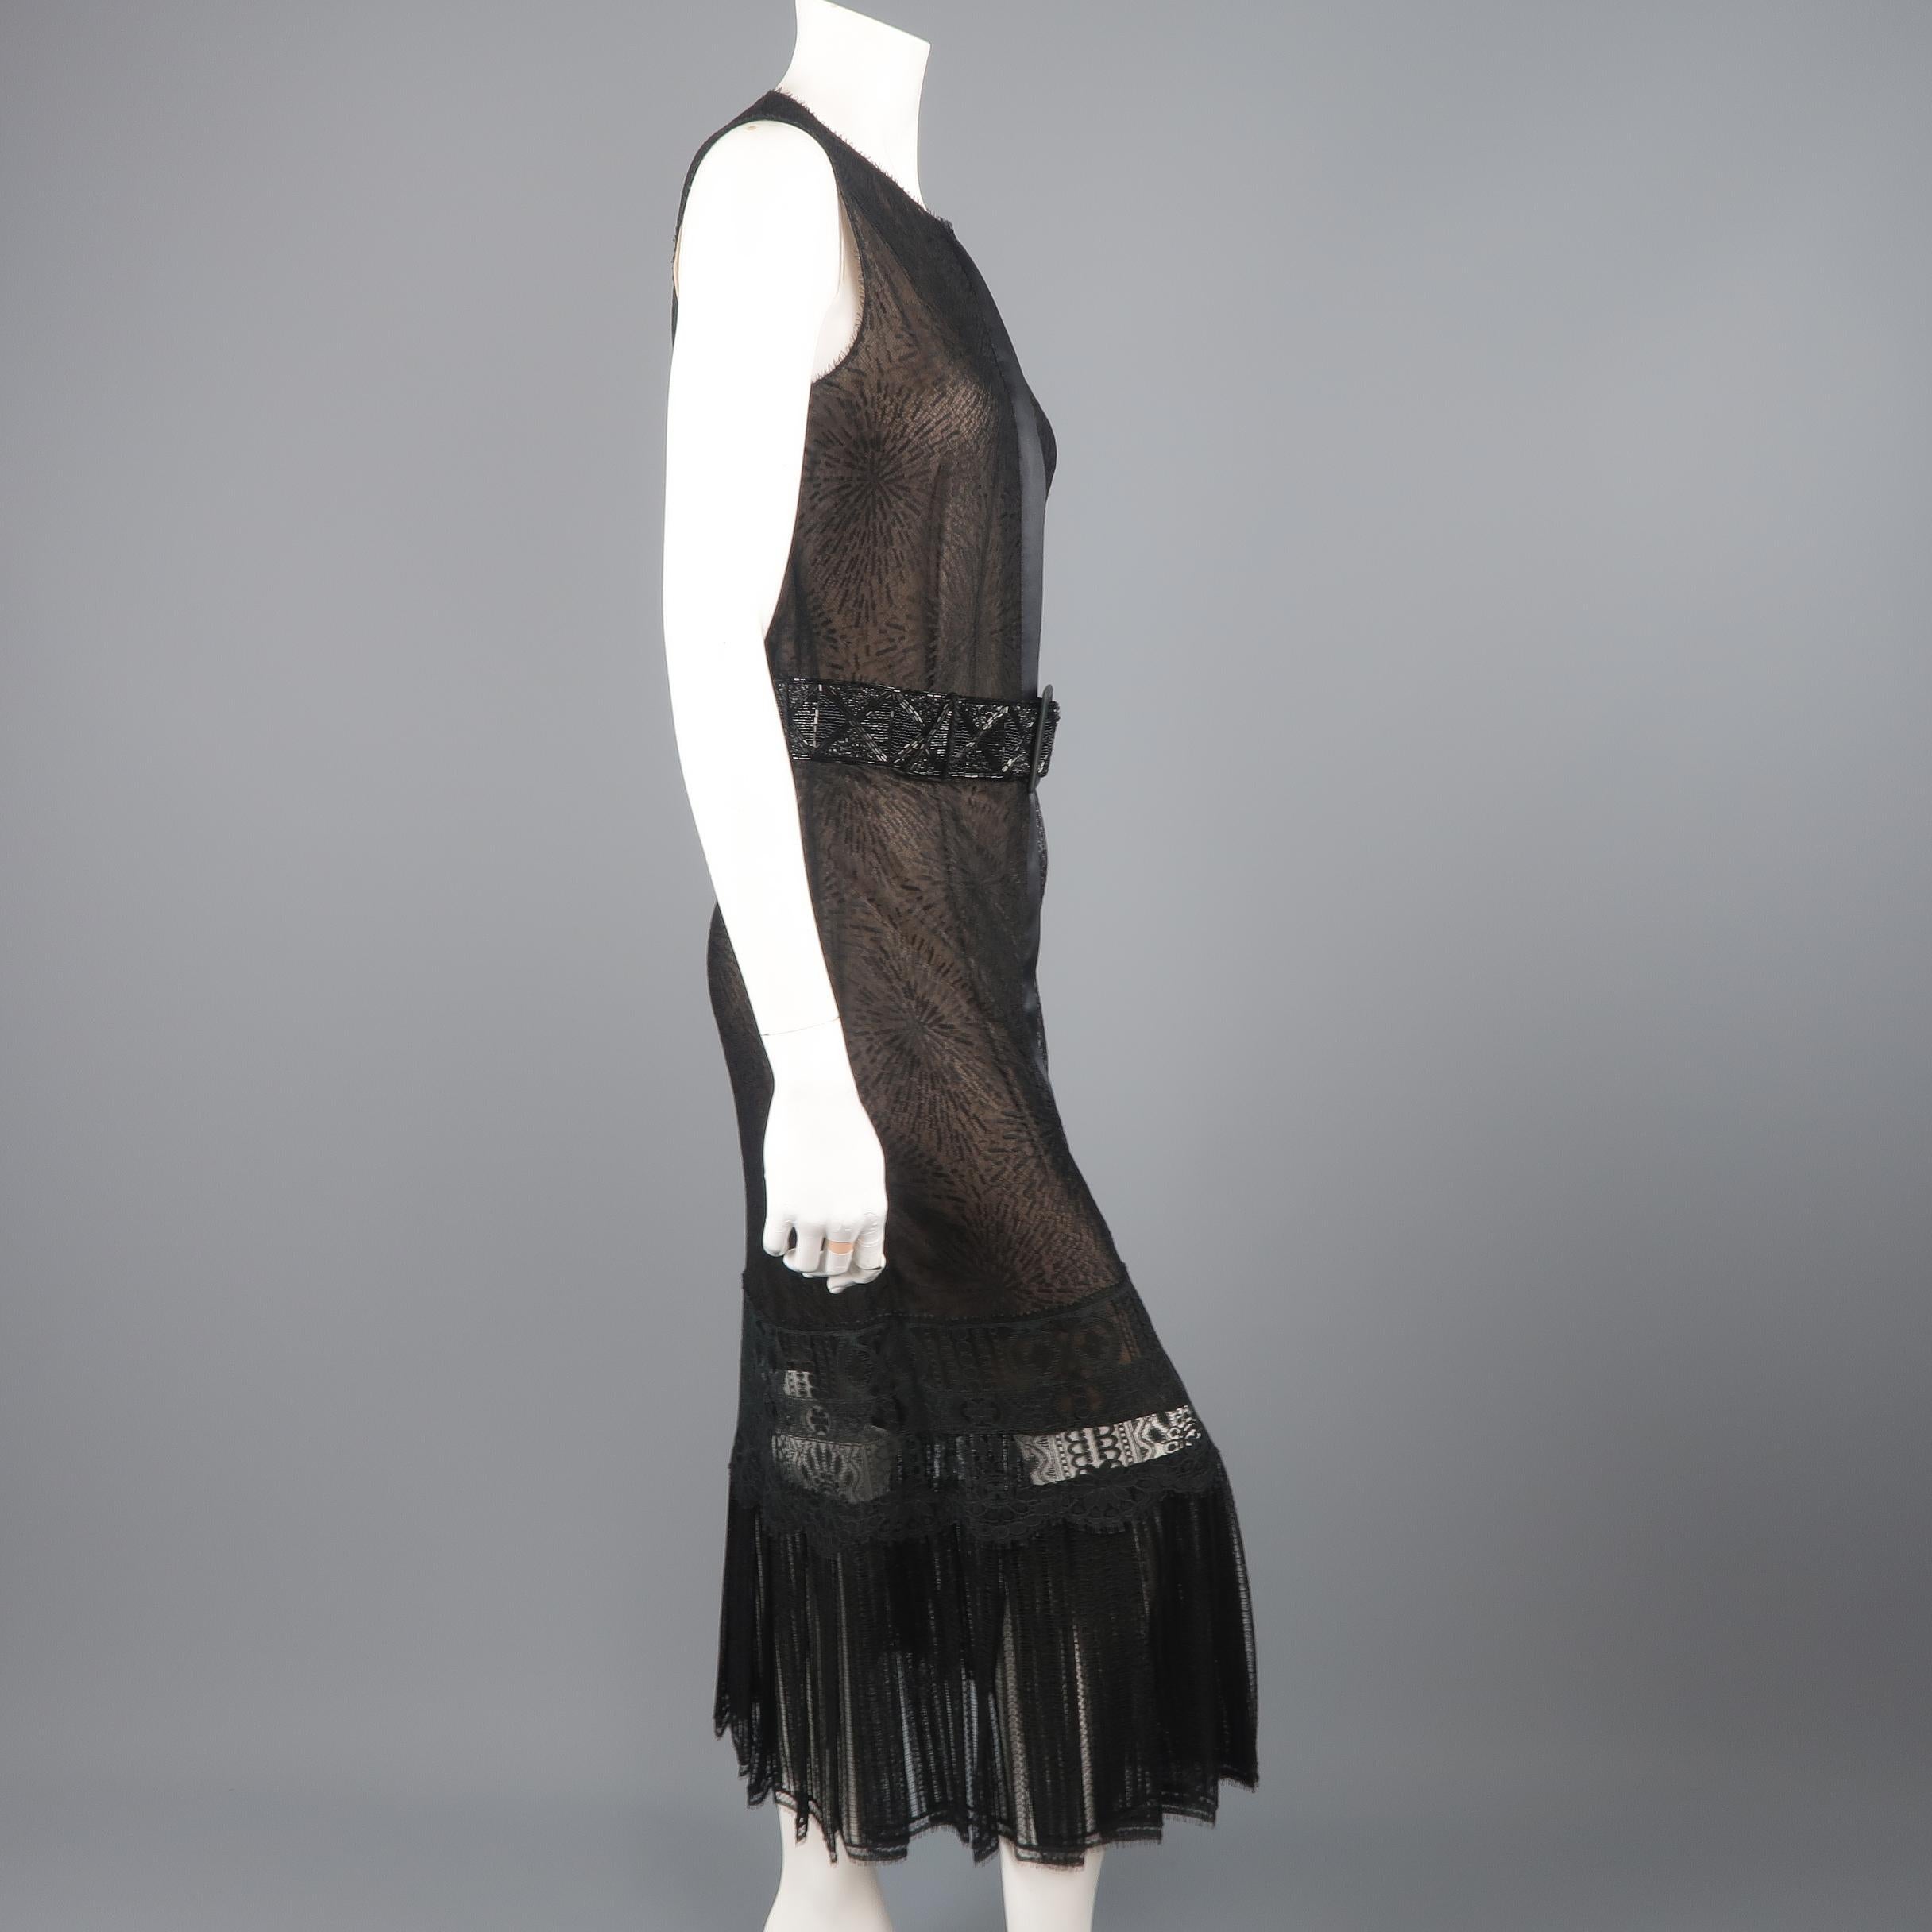 Richard Tyler Dress - Black Lace Ruffled Skirt Sleeveless Beaded Belt 3